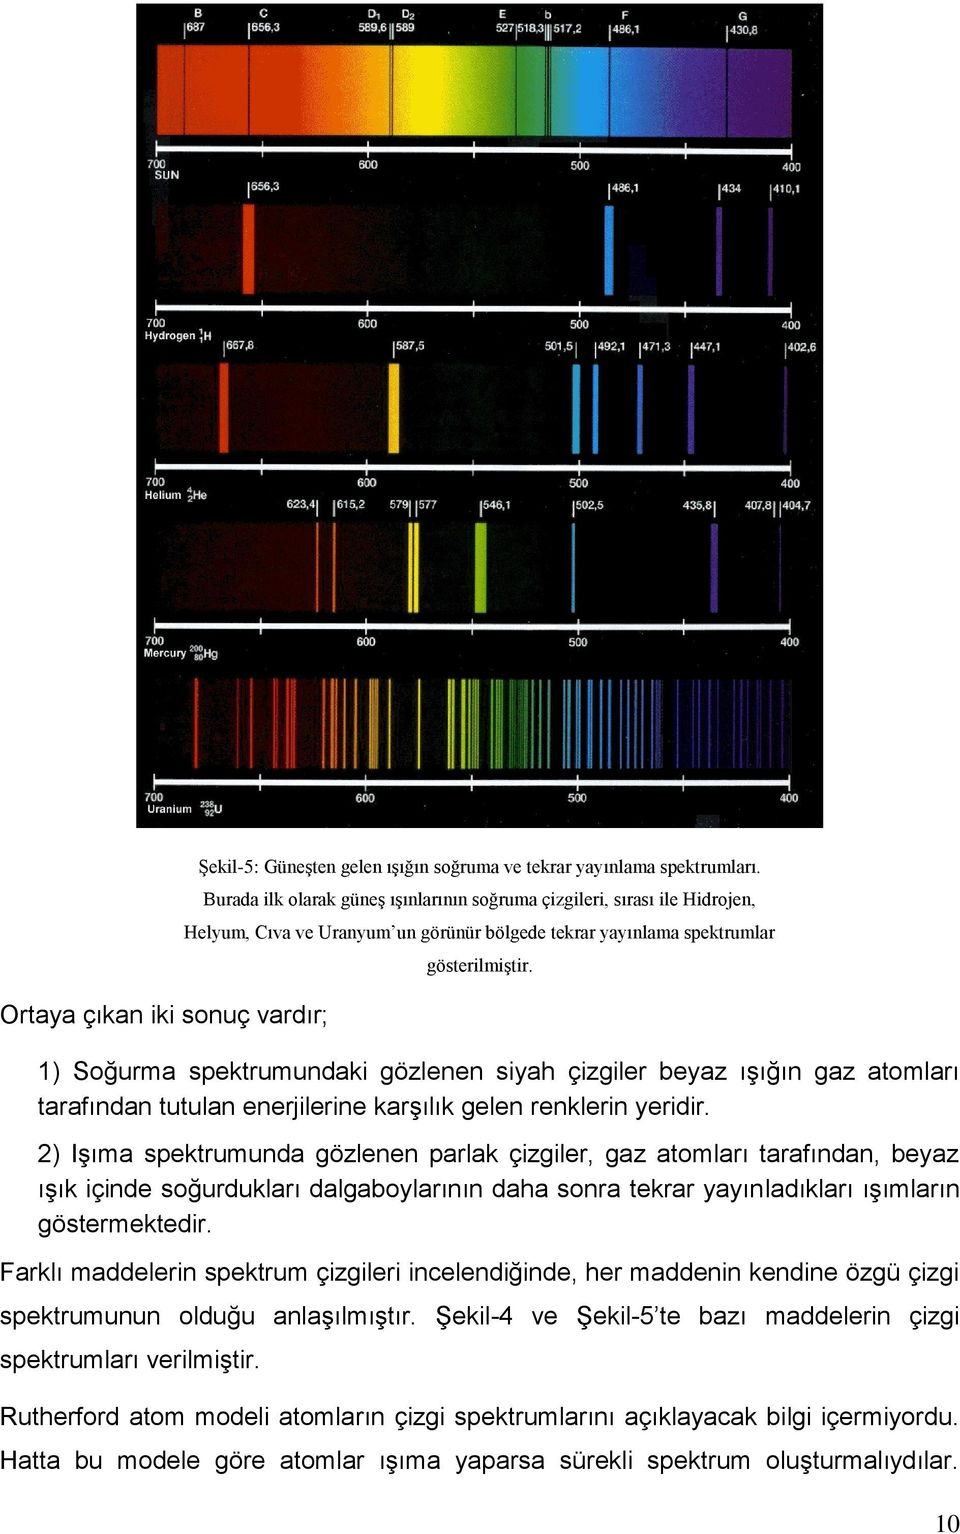 1) Soğurma spektrumundaki gözlenen siyah çizgiler beyaz ışığın gaz atomları tarafından tutulan enerjilerine karşılık gelen renklerin yeridir.